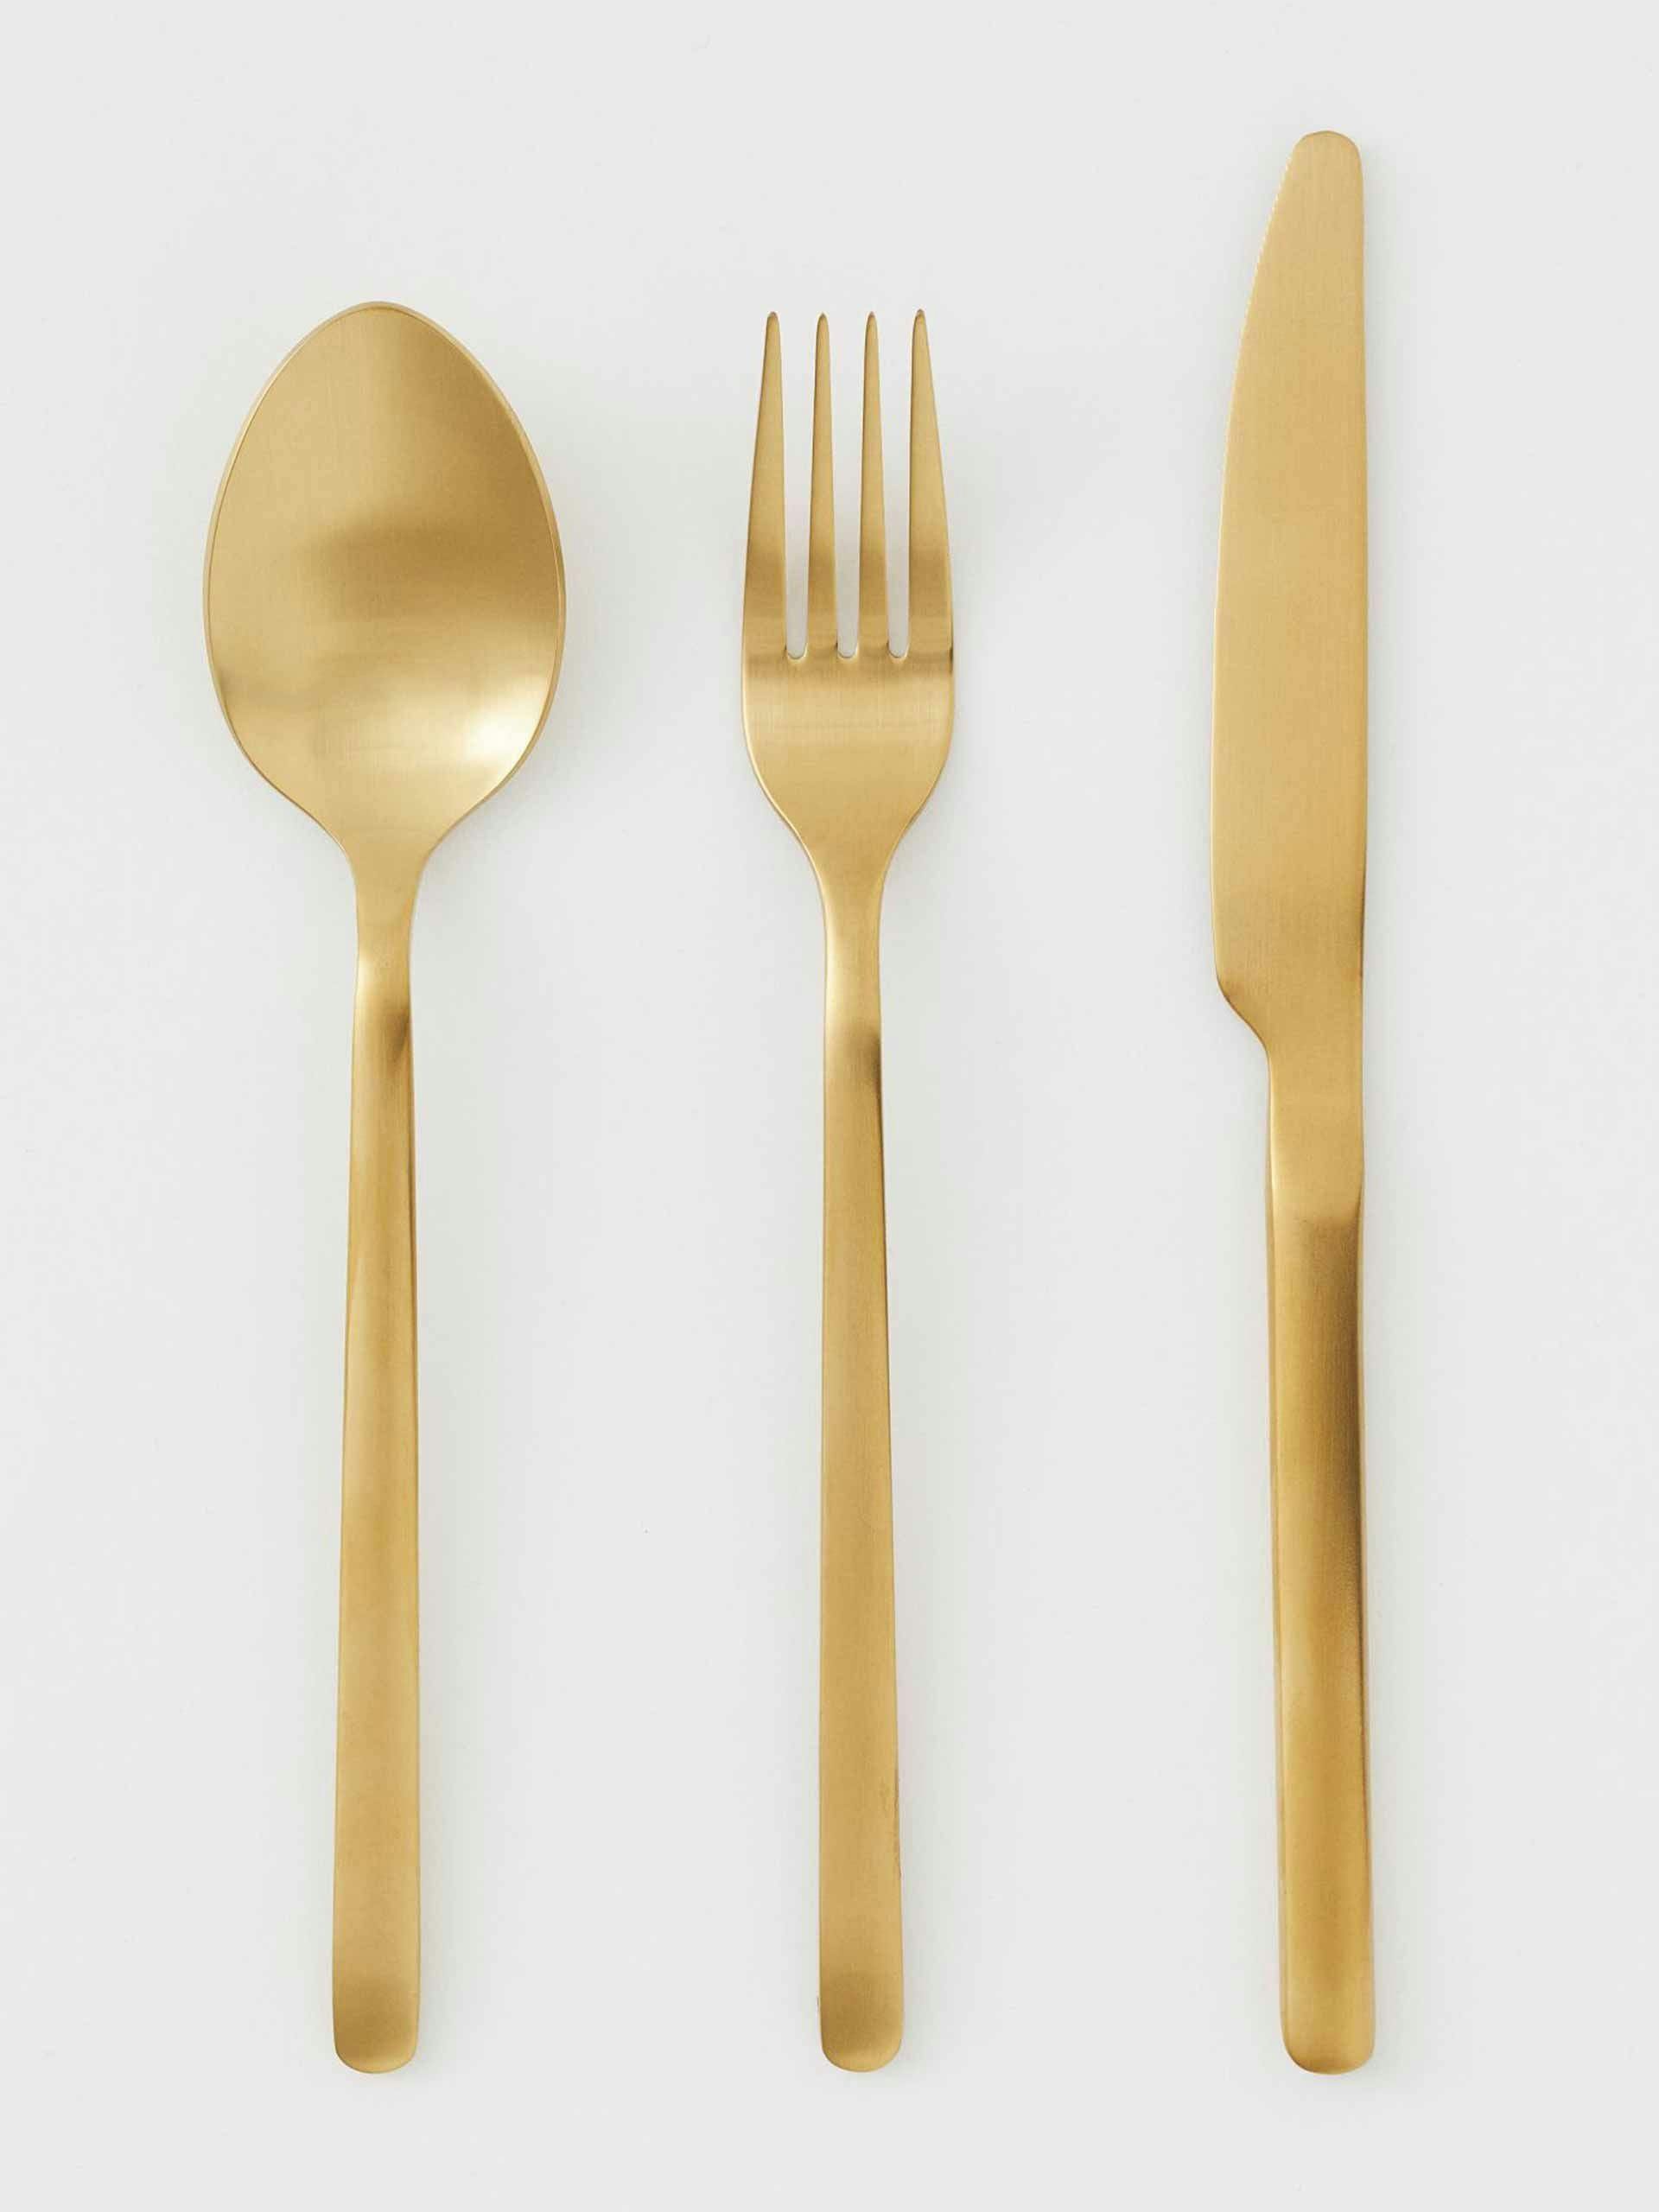 Matt gold cutlery set